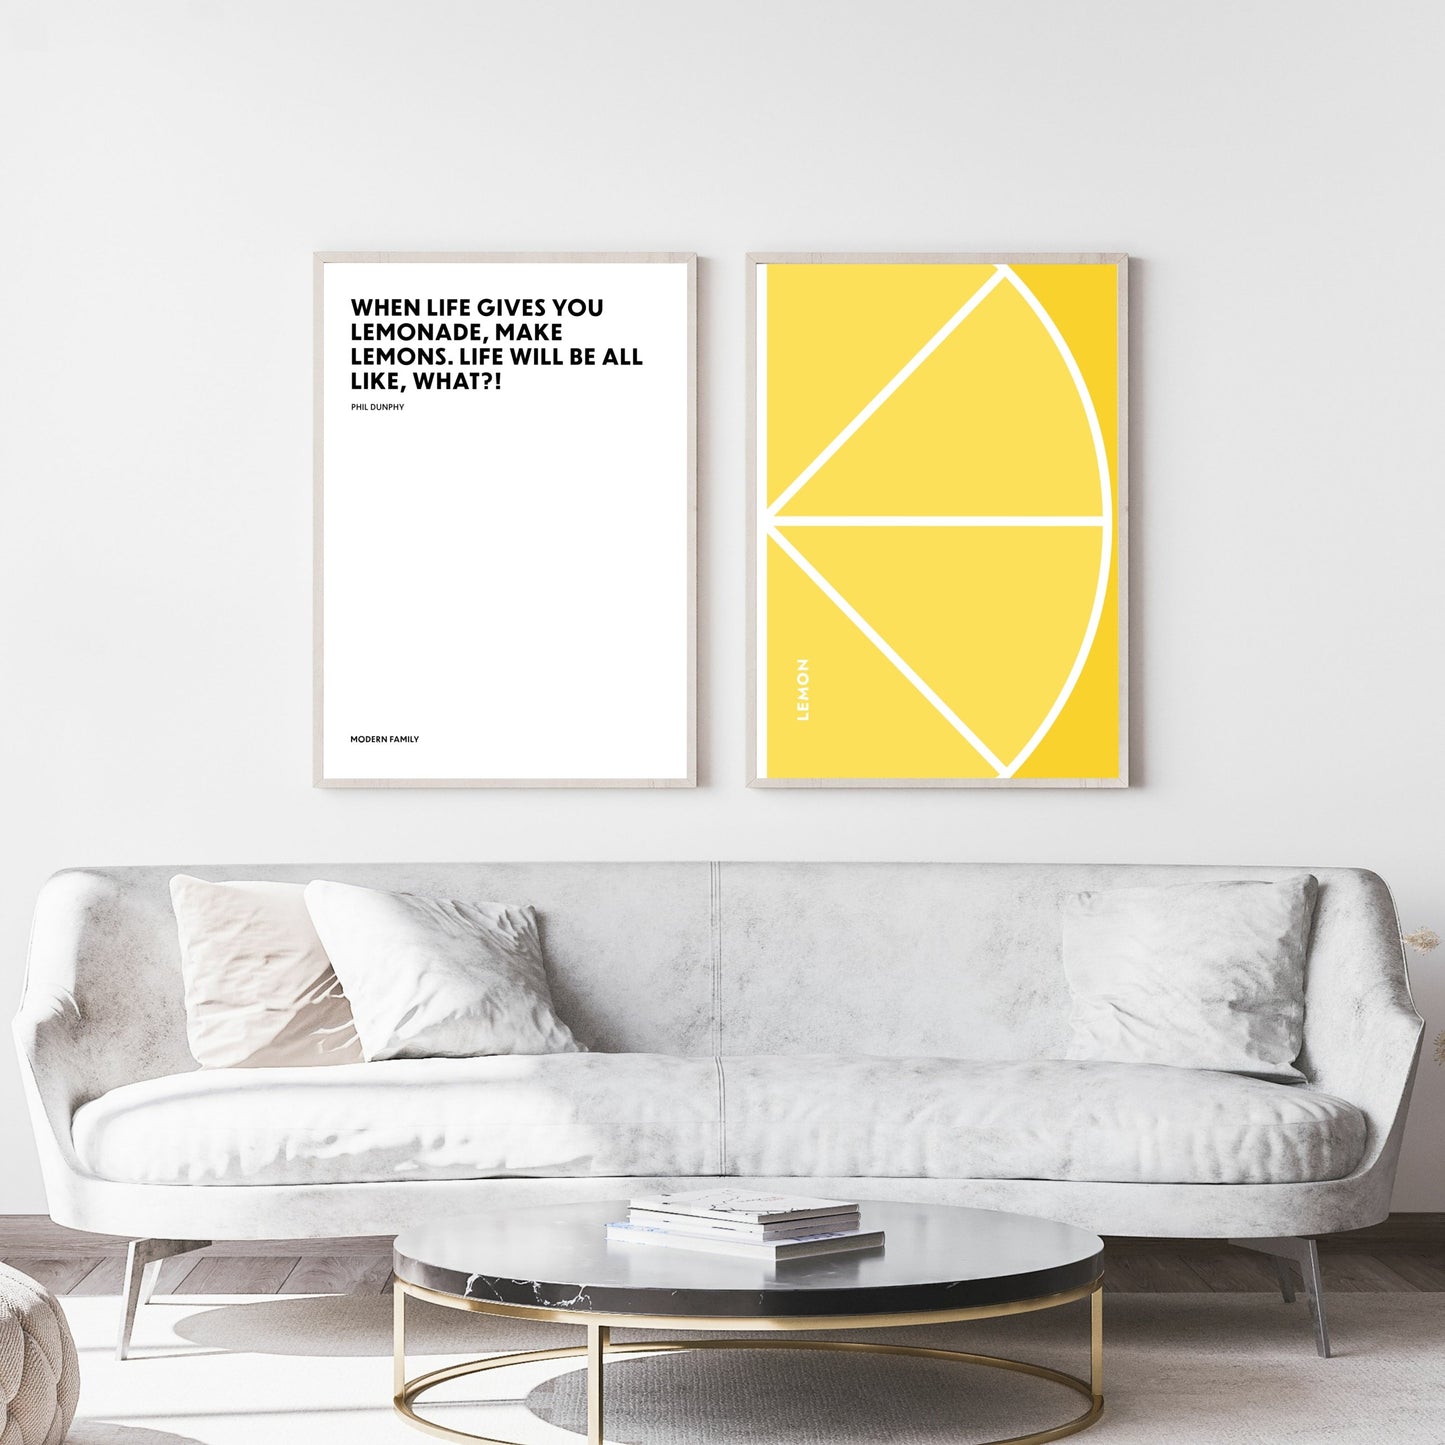 Poster When life gives you lemonade, make lemons. - Phil Dunphy - Modern Family